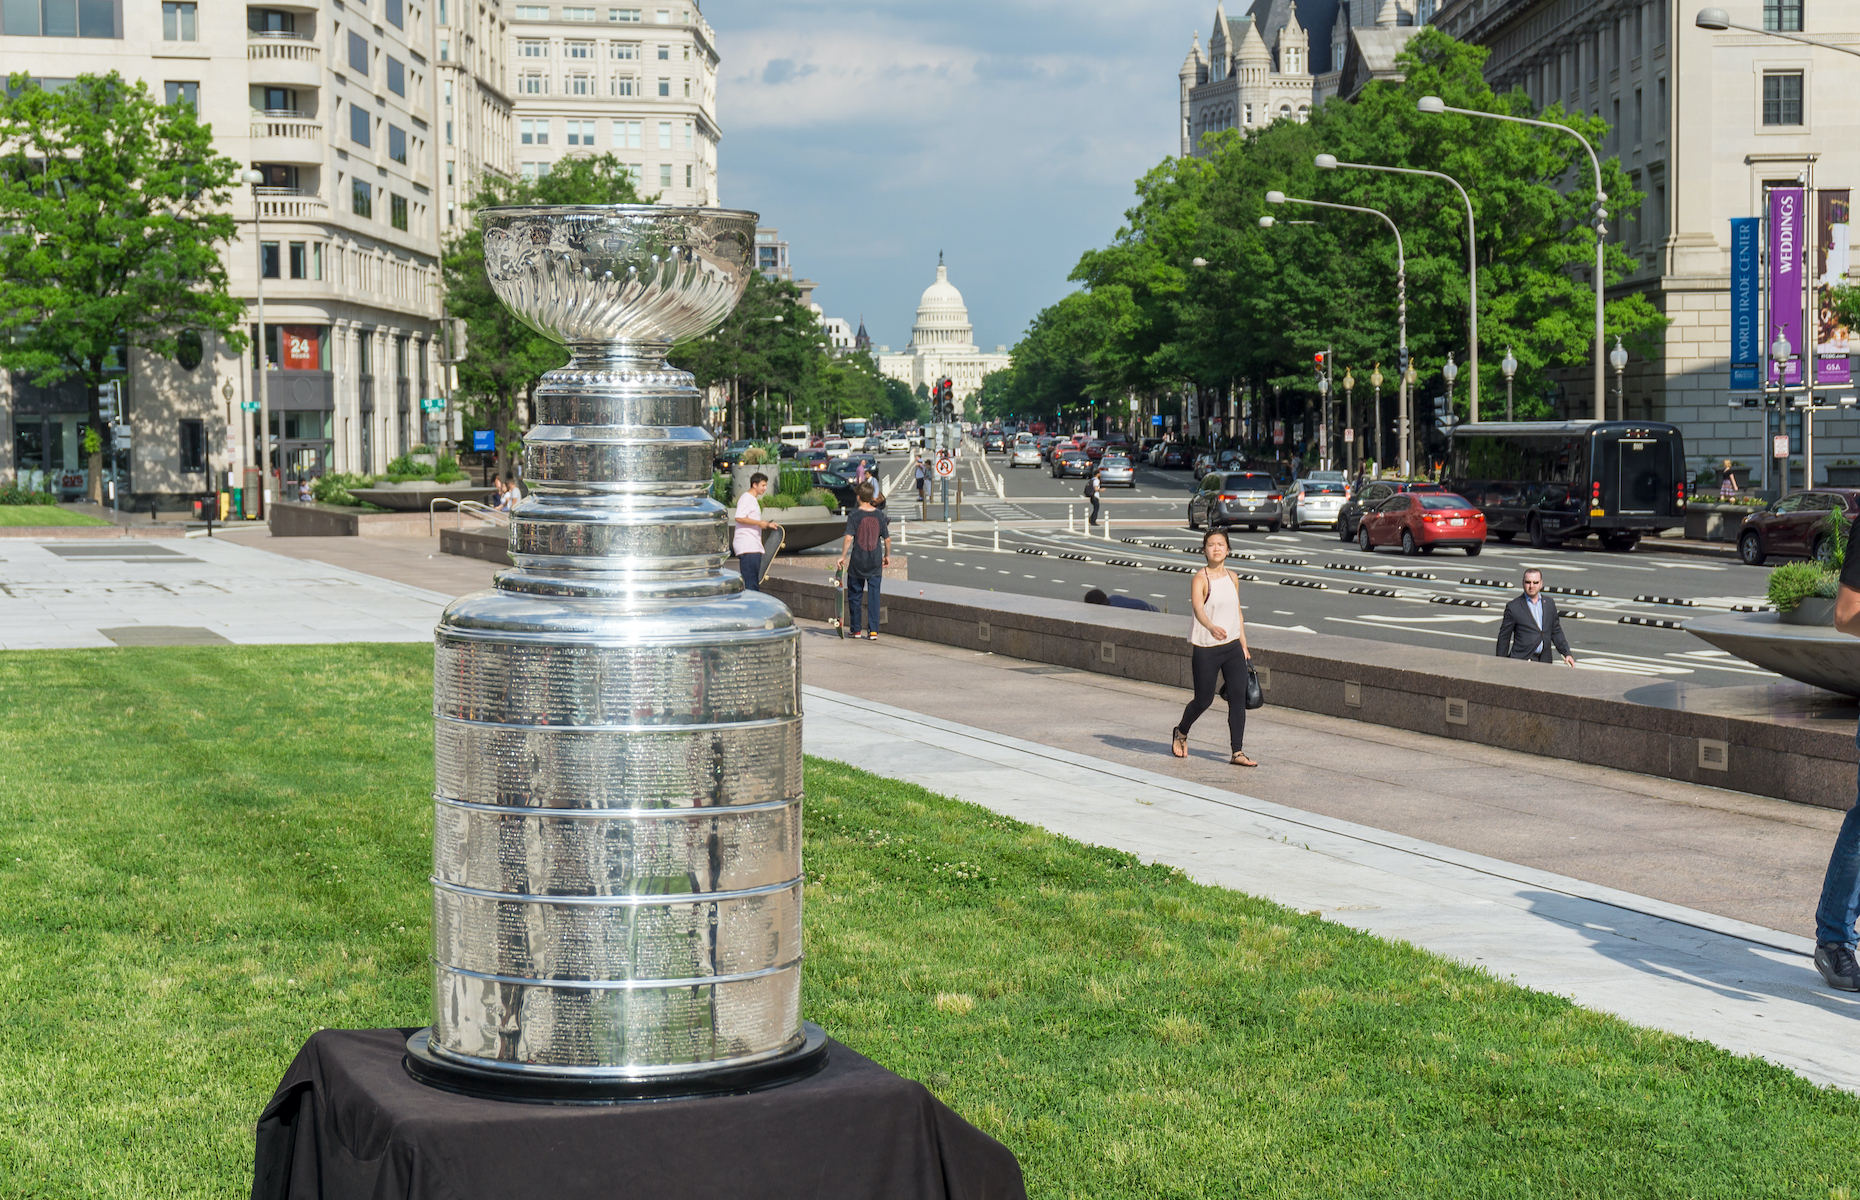 一个人走在街上的雕像：每年，NHL 的曲棍球队都会争夺斯坦利杯，这是一个非常大的杯赛，上面印有联盟历史上所有获胜球队的名字。 加拿大曲棍球爱好者菲尔·普里查德 (Phil Pritchard) 是杯赛的守门员，这意味着他的工作是带着杯赛周游全国，确保它保持安全并把它送到需要的地方。